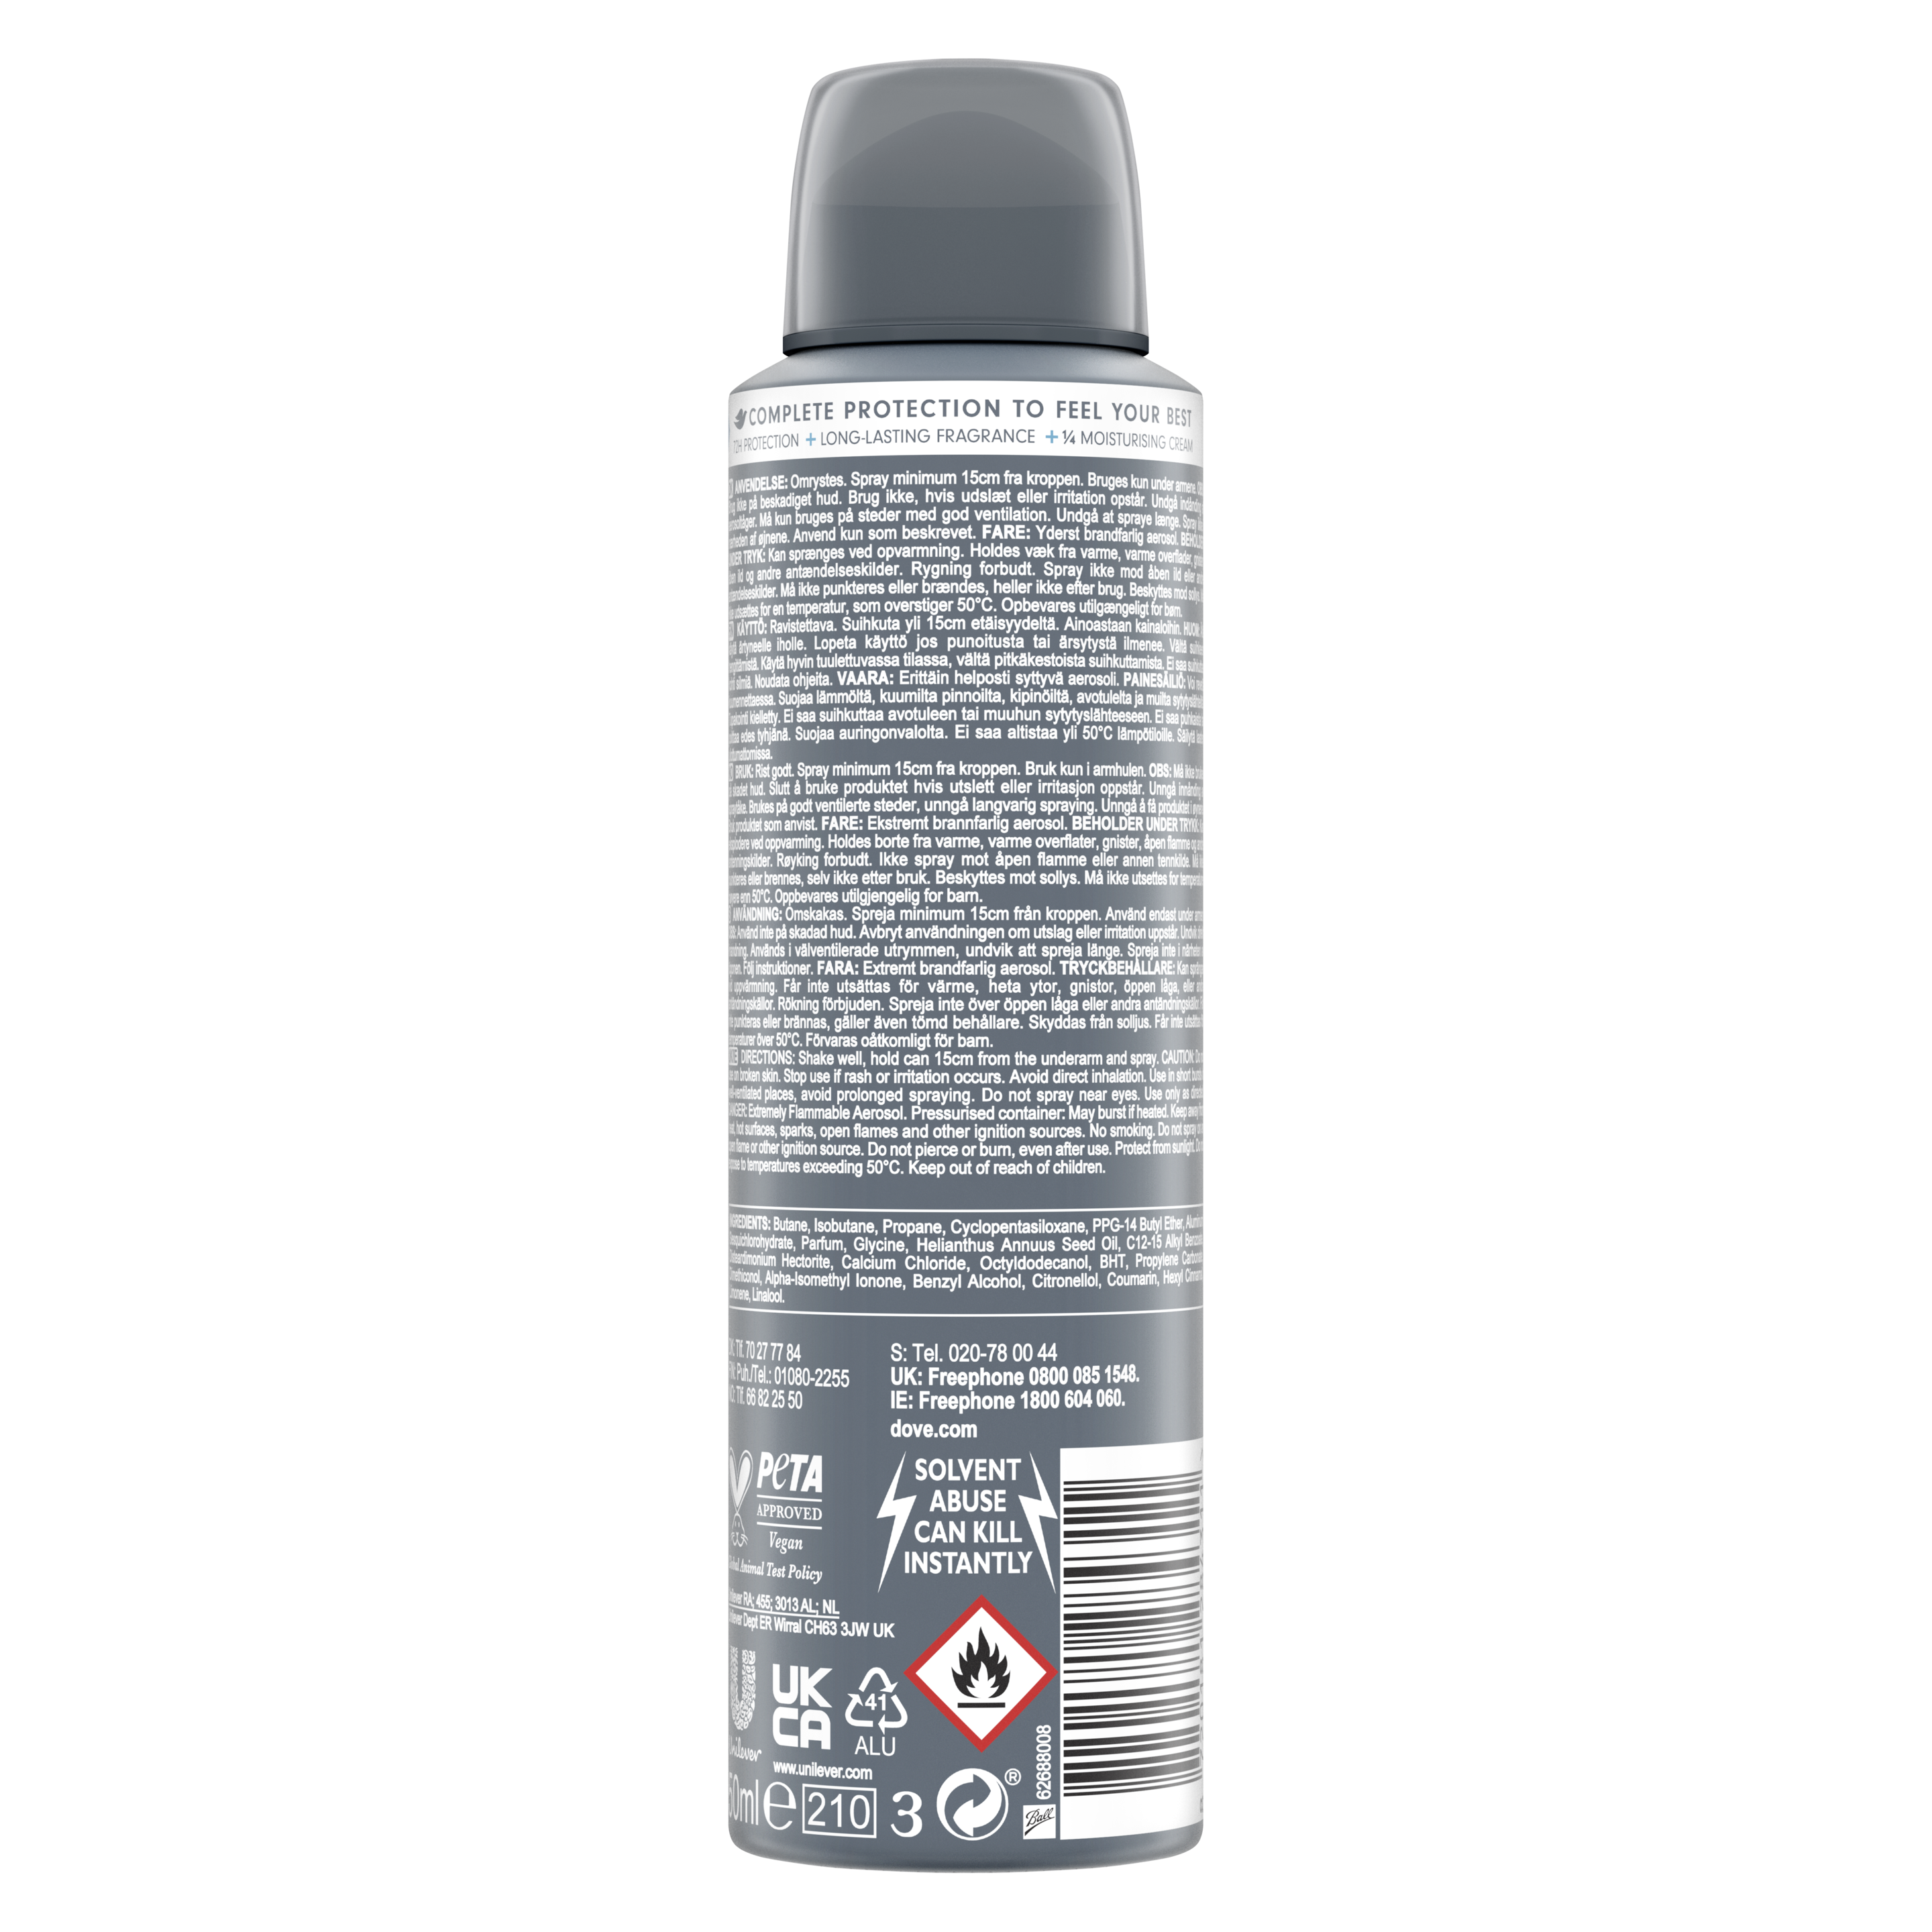 Men+Care Advanced Clean Comfort Antiperspirant Deodorant Aerosol